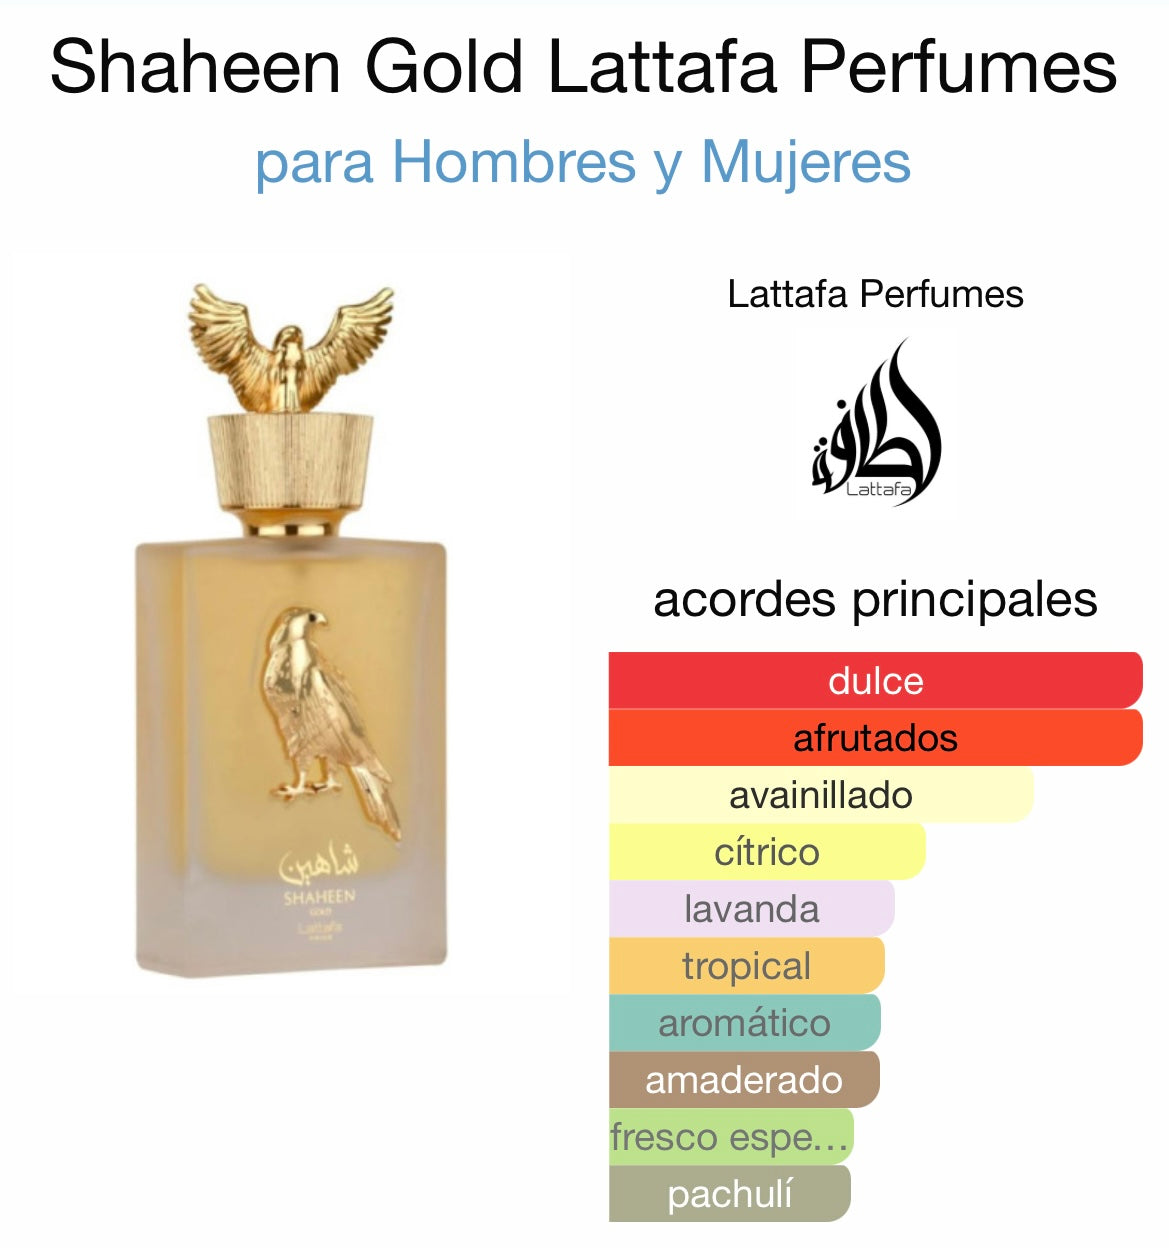 Shaheen gold Lattafa Pride - 100 ml - Dubai Esencias